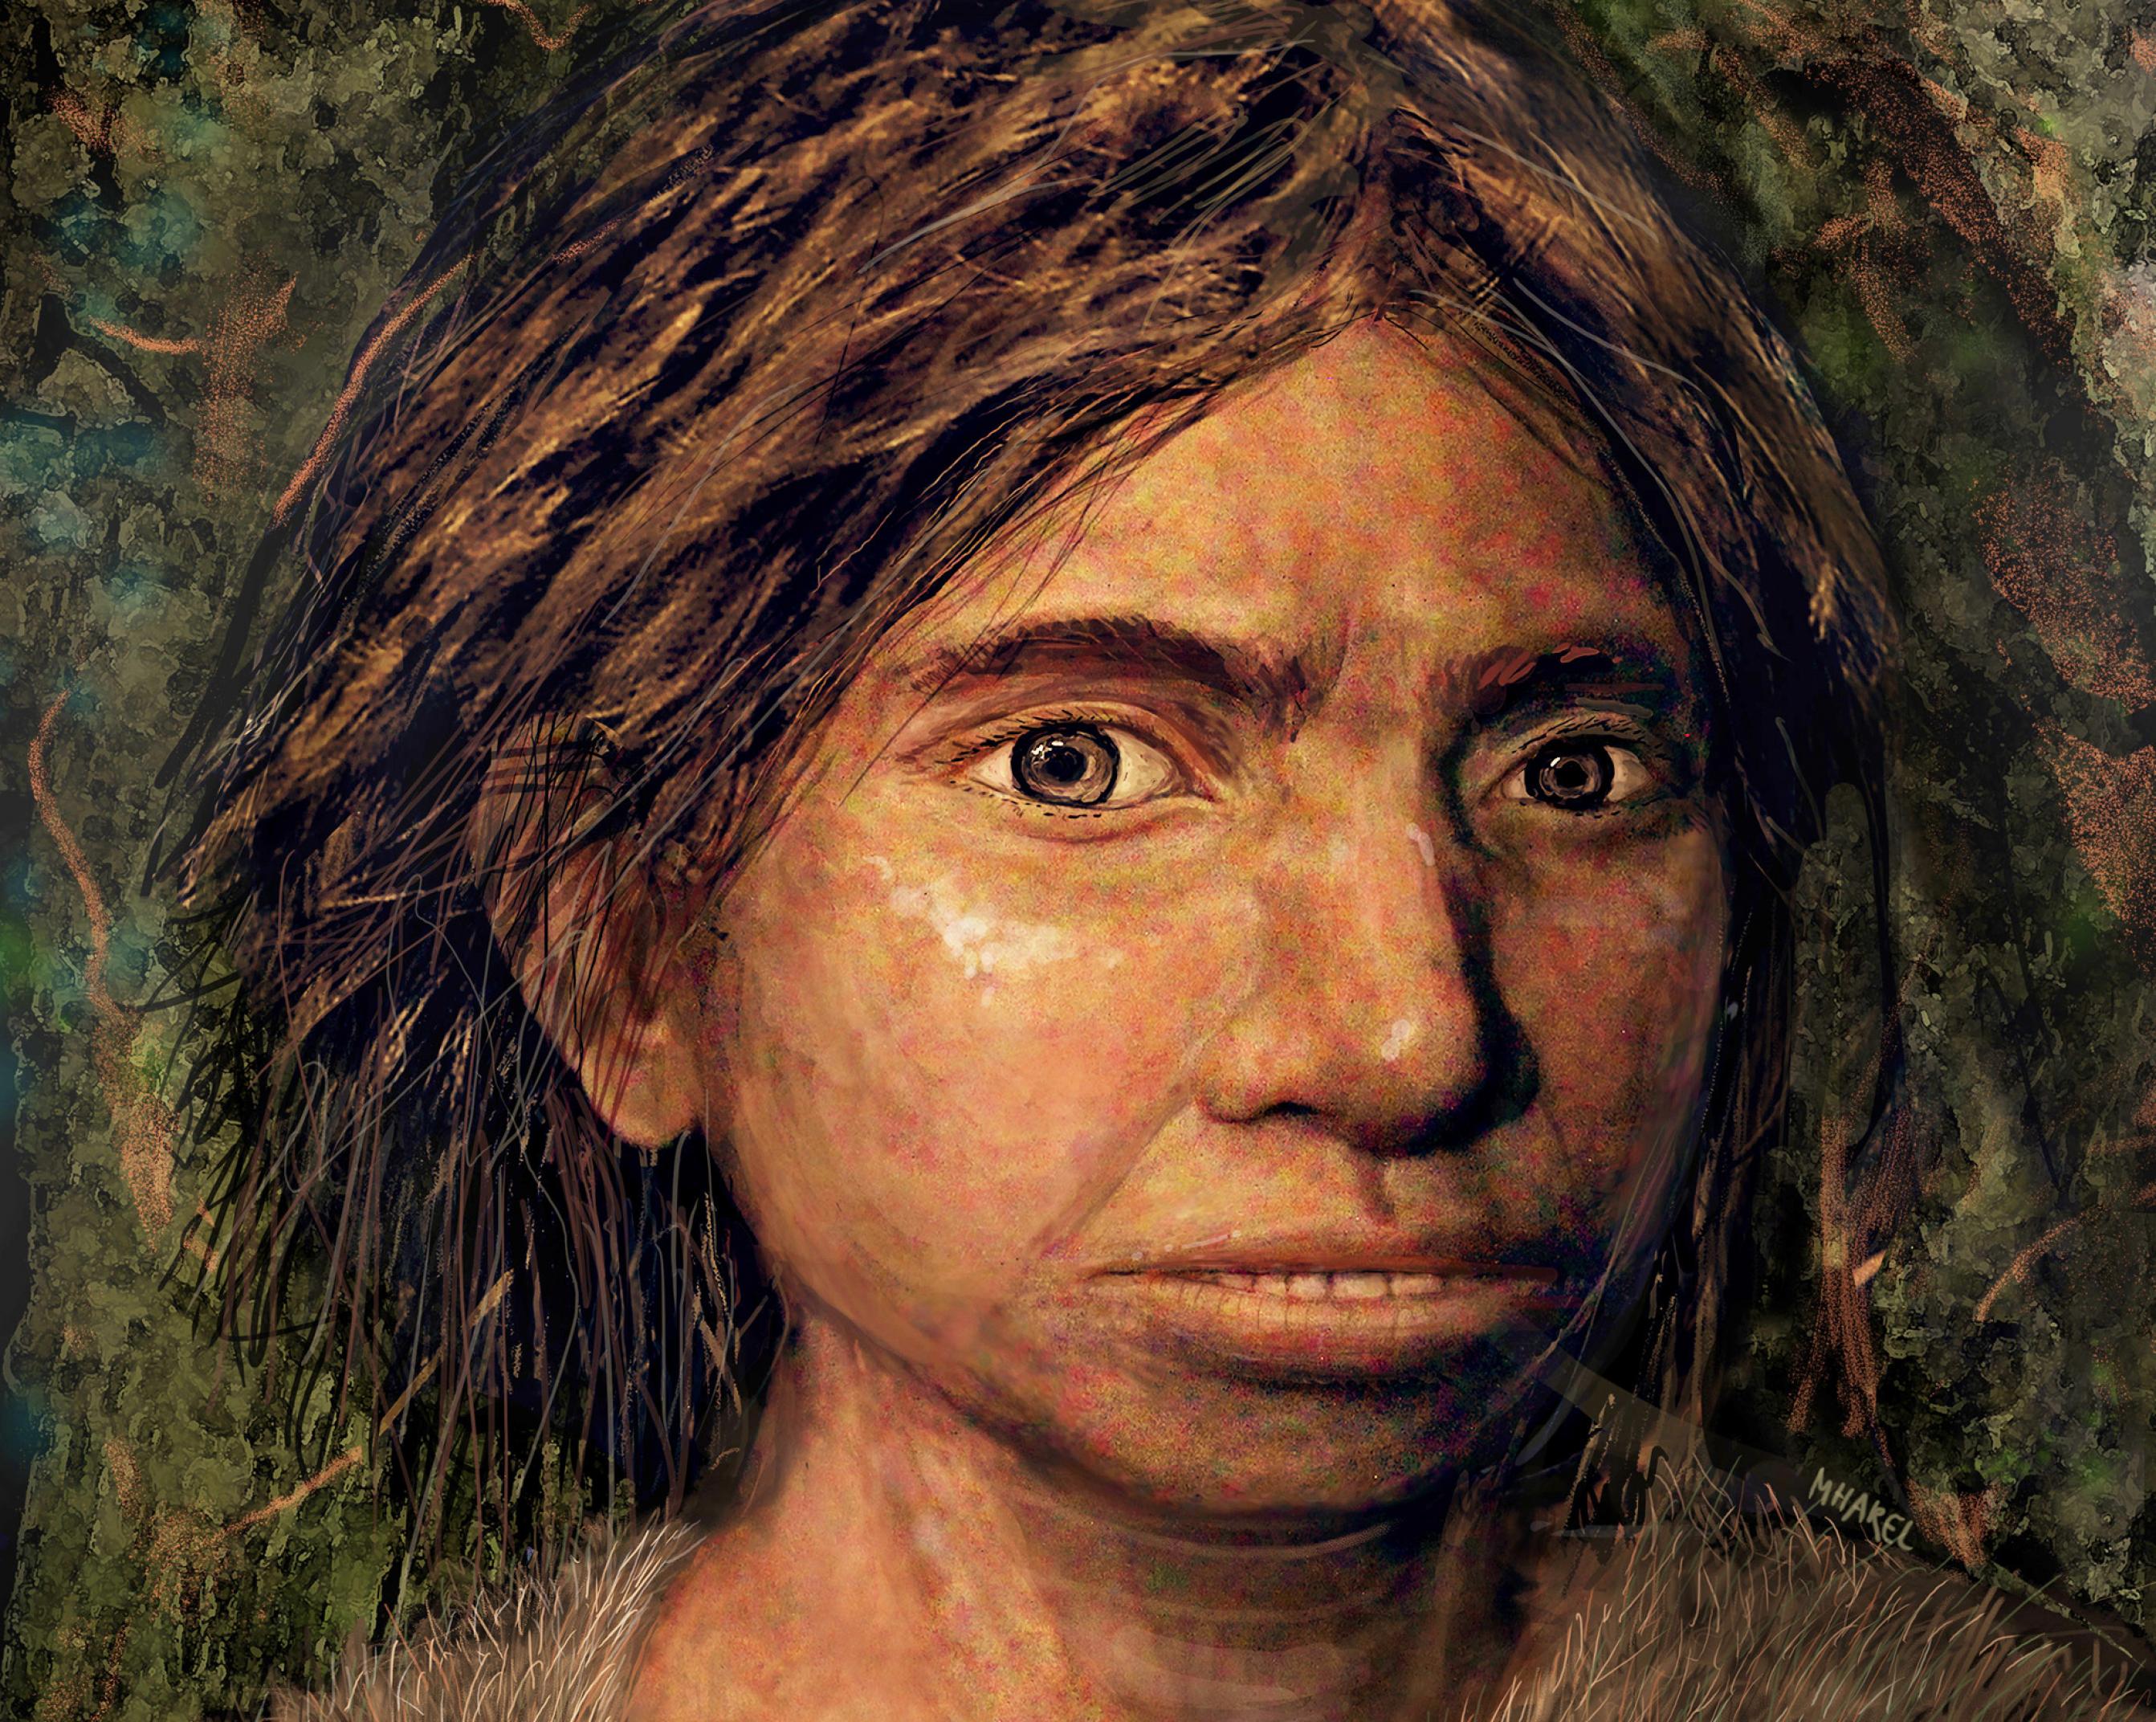 Das Bild zeigt Kopf und Hals eines Mädchens mit kräftigen, dunkelbraunen Haaren, braunen Augen und einem ungewöhnlich breiten Gesicht mit gelblich-brauner Hautfarbe.